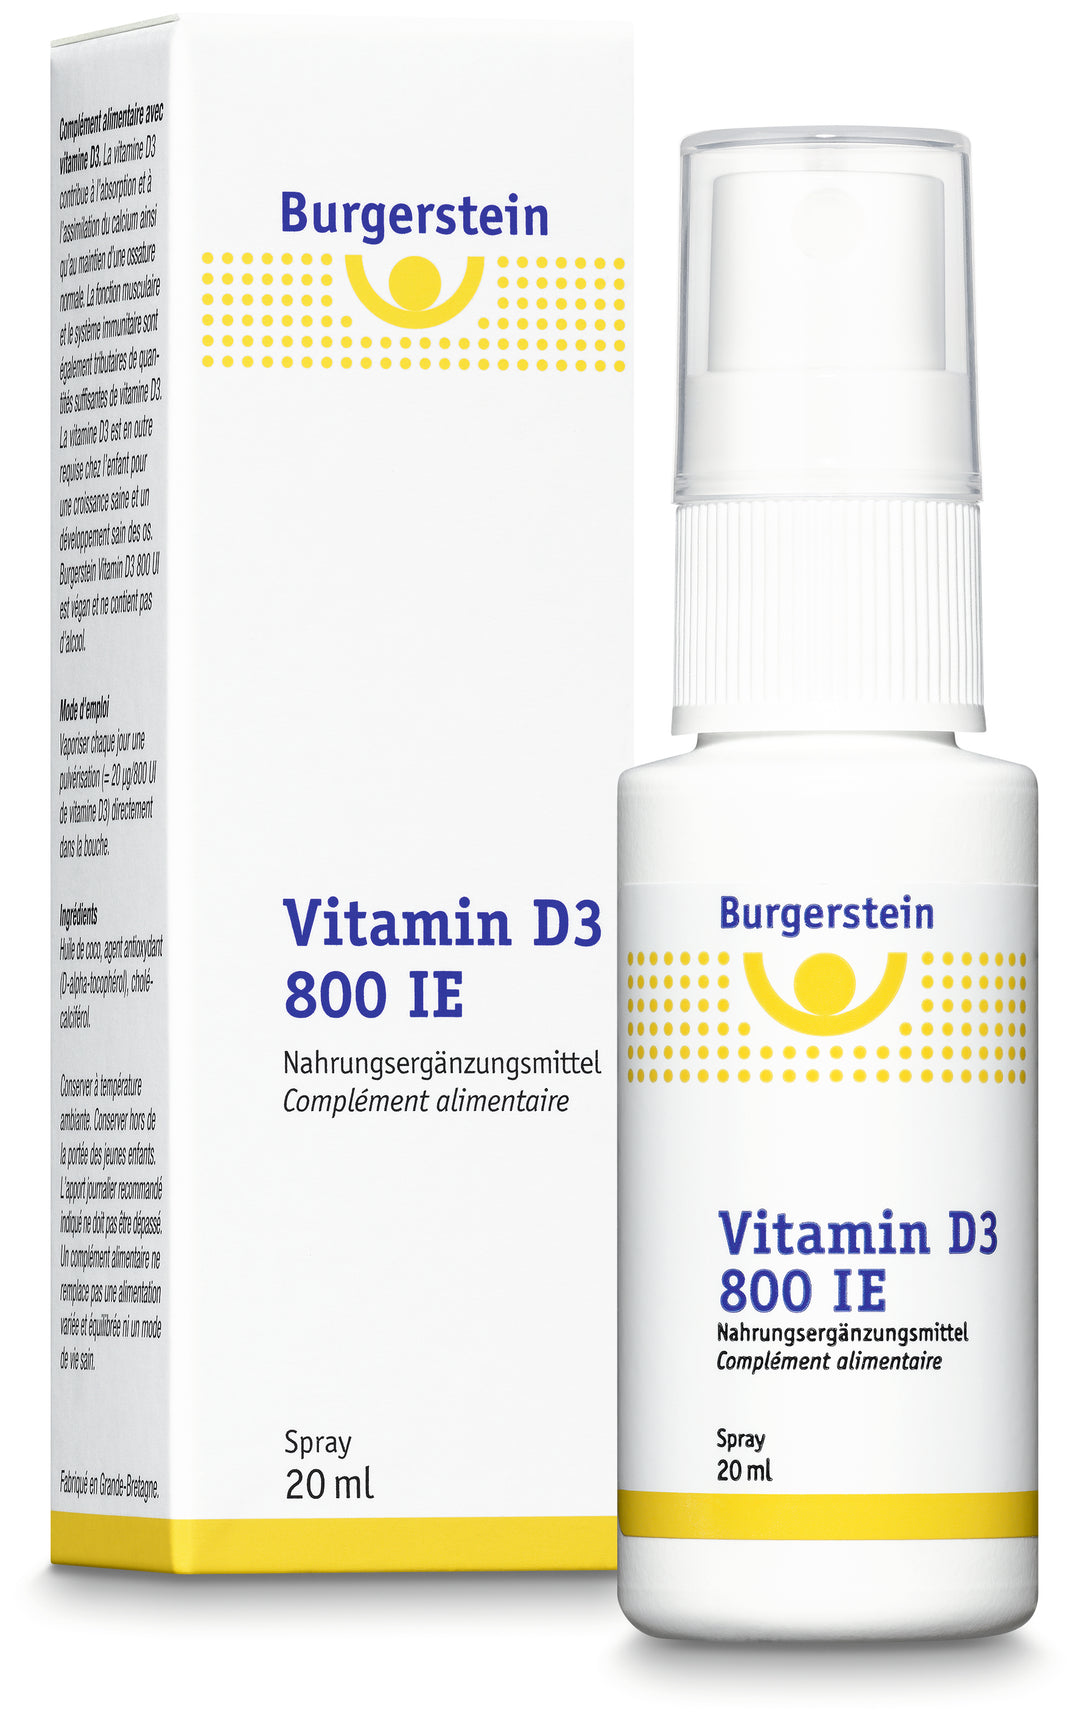 BURGERSTEIN Vitamin D3 800 UI spray 20 ml